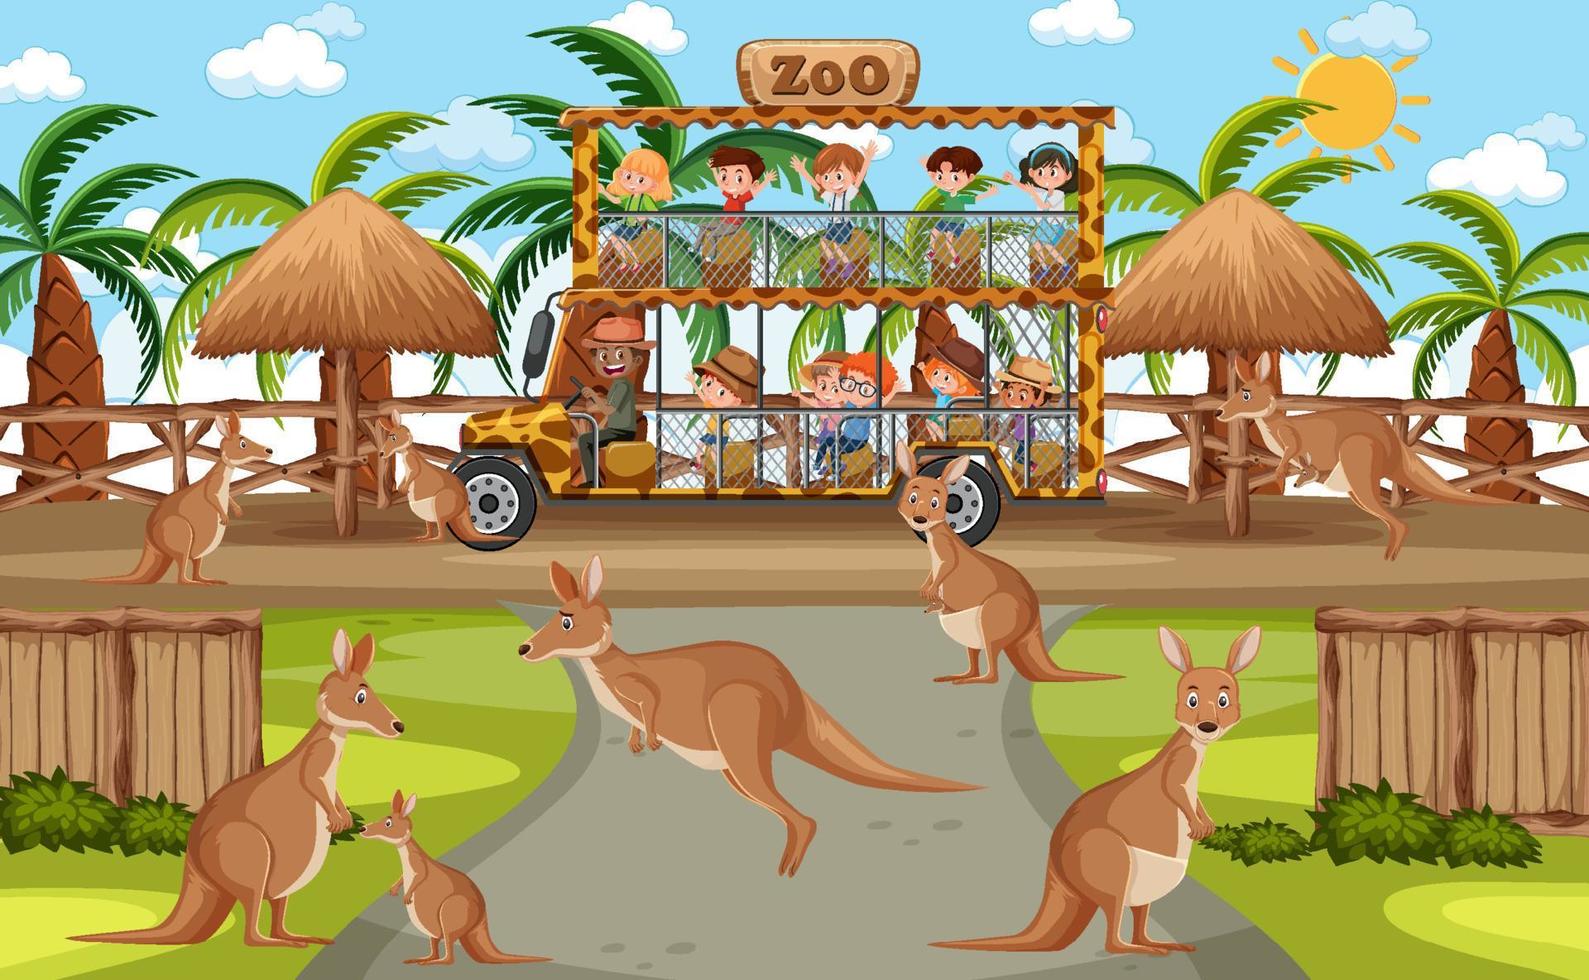 safari scène met kinderen op toeristenauto kijken naar kangoeroe groep vector